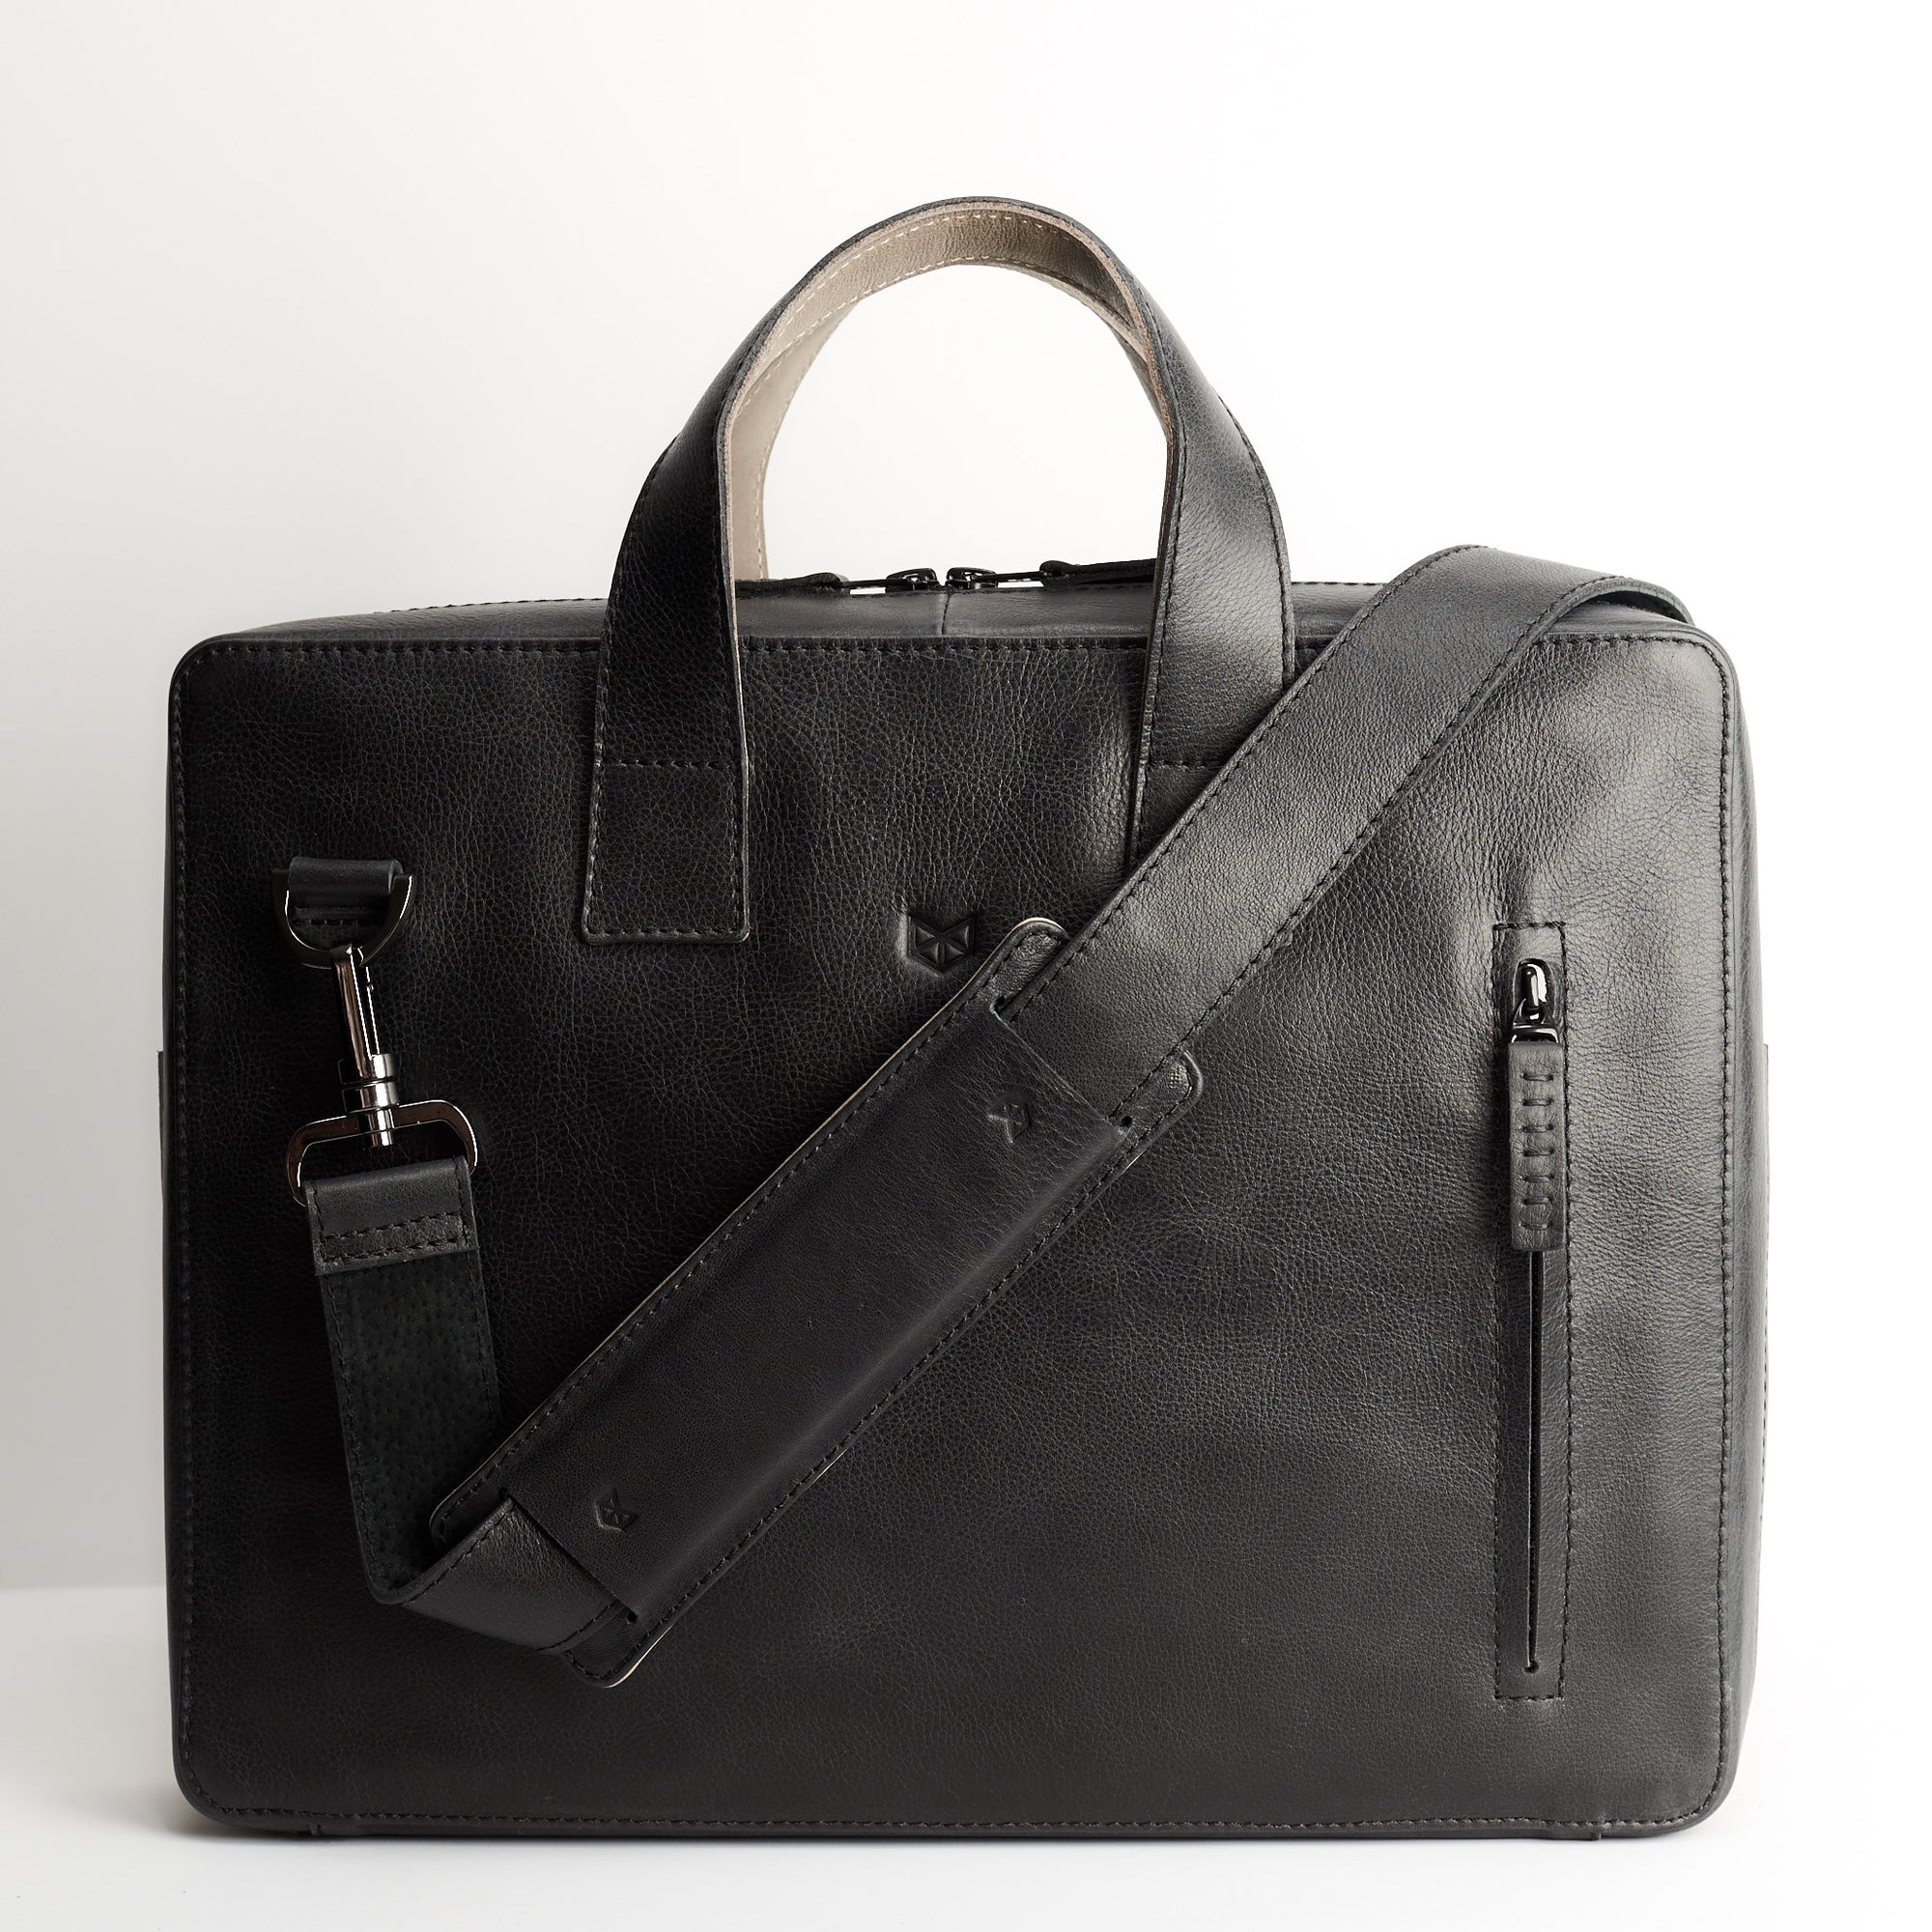 Extra padded shoulder strap detail. Leather briefcase for mens. Laptop workbag